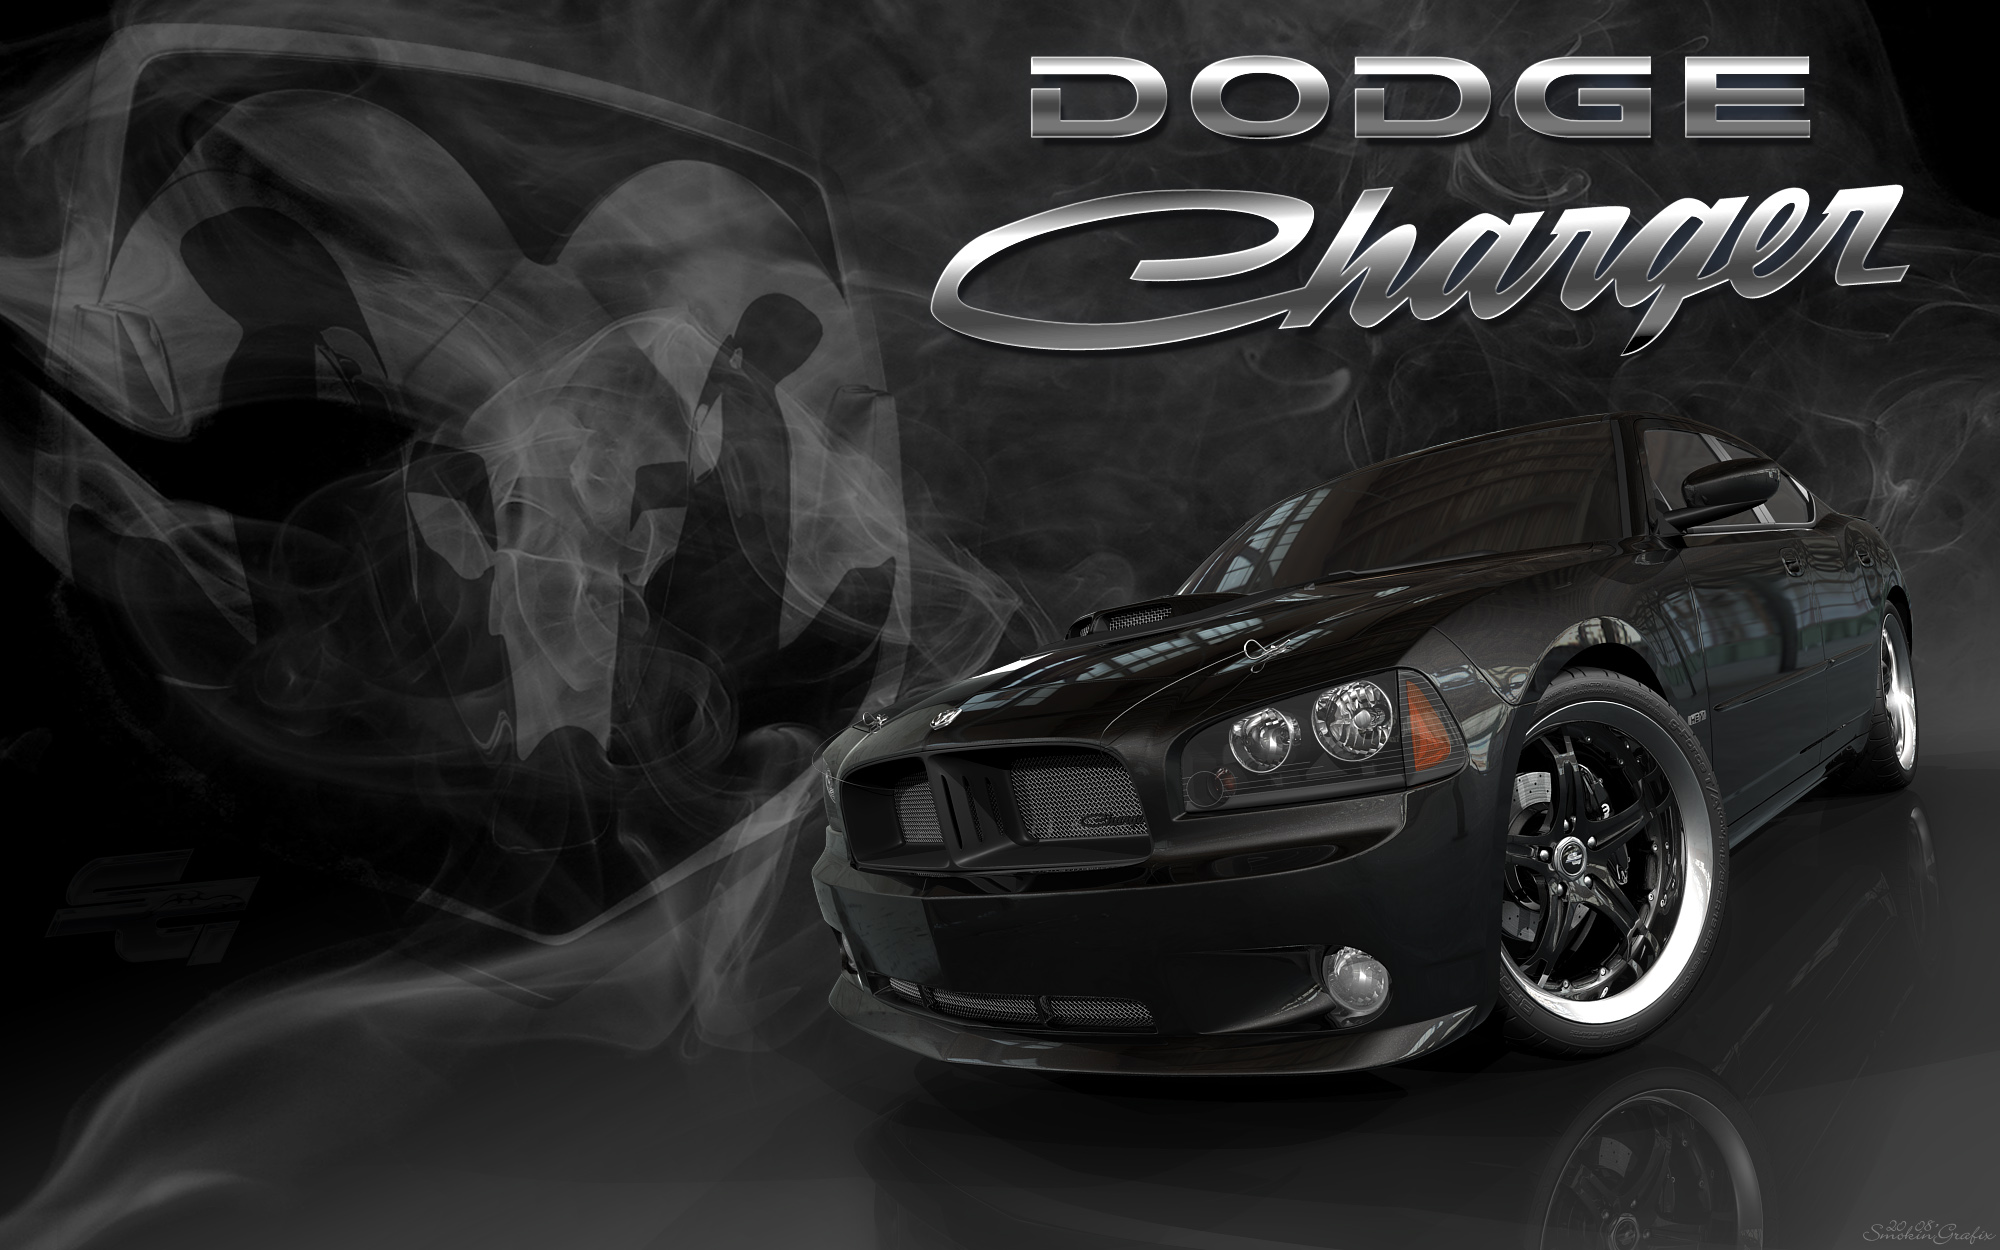 Description Dodge Charger Car Wallpaper is a hi res Wallpaper for pc